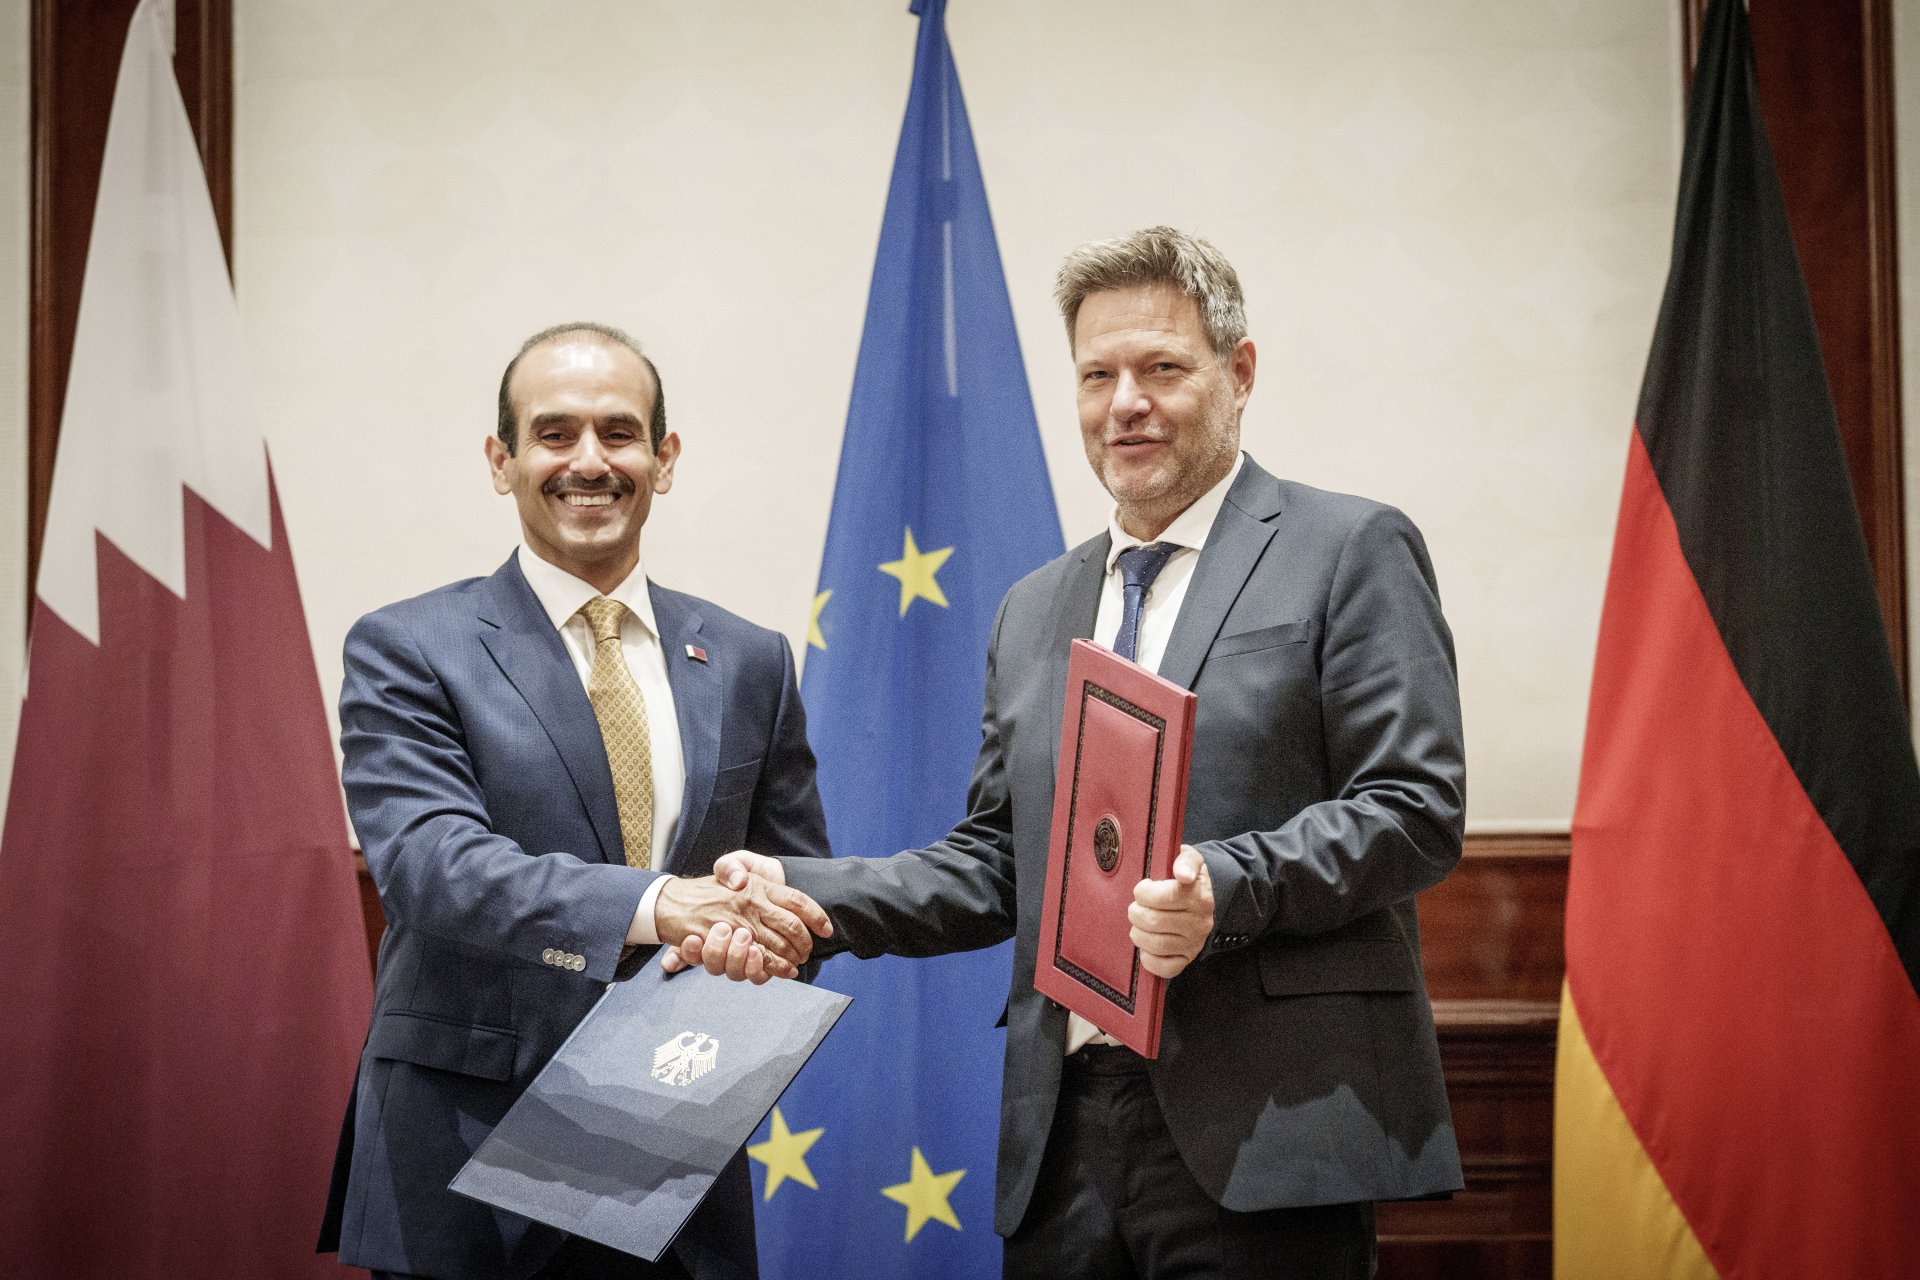 Саад бин Шарида ал Кааби - министър на енергетиката на Катар и Роберт Хабек - министър на икономиката и климата на Германия, подписват меморандум за сътрудничество между двете страни, 20 май 2022 г.